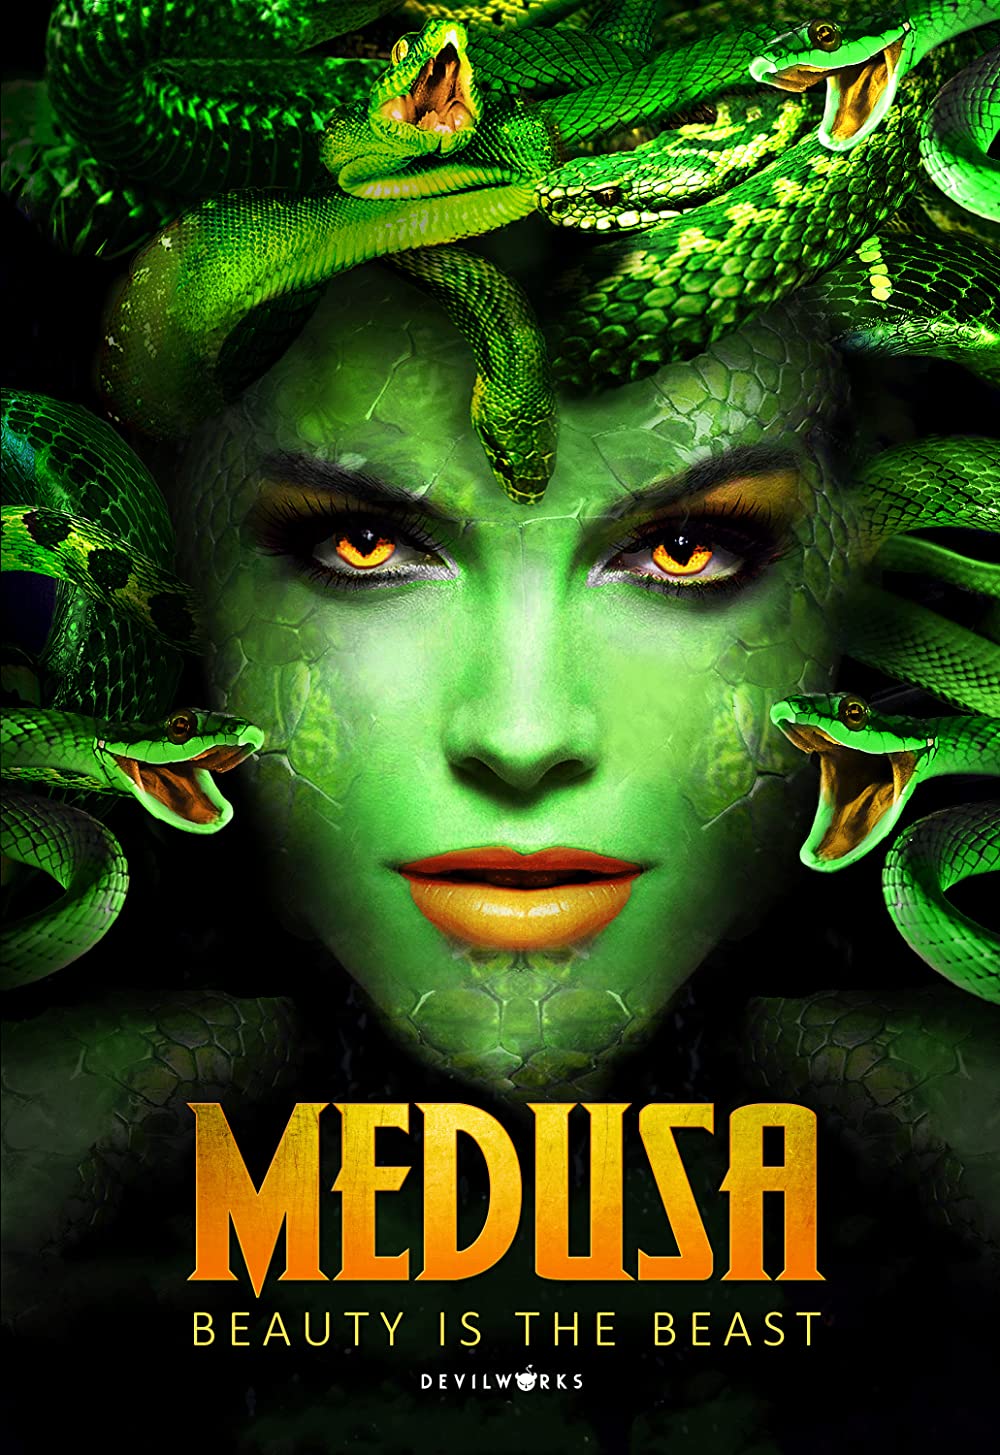 Medusa: Nữ Hoàng Của Loài Rắn